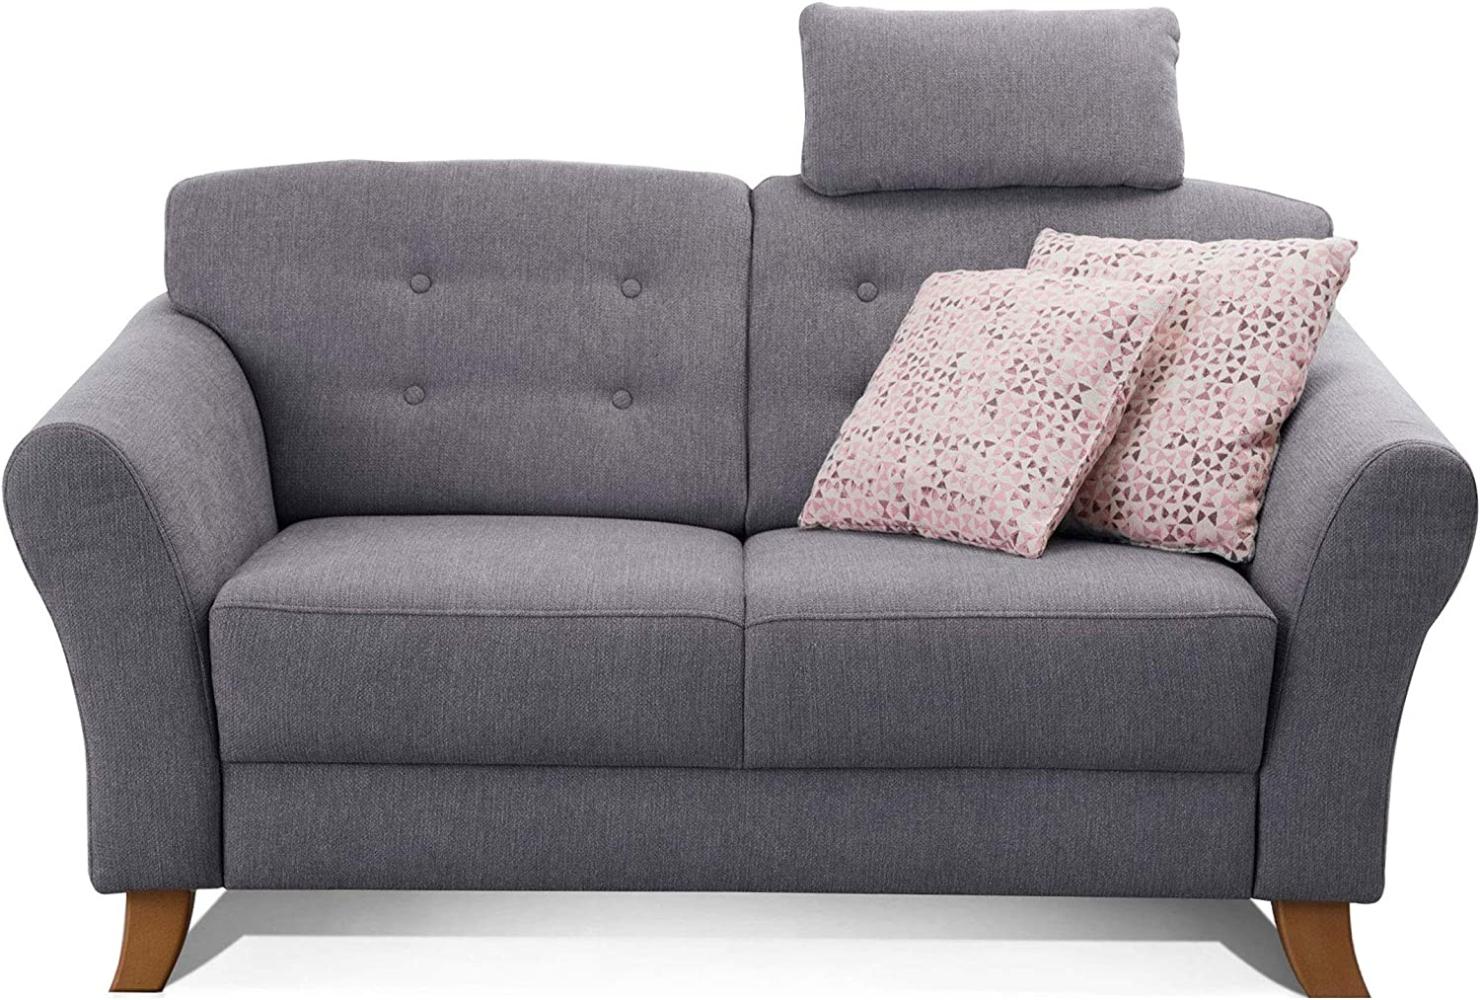 Cavadore 2-Sitzer-Sofa / Moderne Couch im Landhausstil mit Knopfeinzug im Rücken / Federkern / Inkl. Kopfstütze / 163 x 89 x 90 / Flachgewebe grau Bild 1